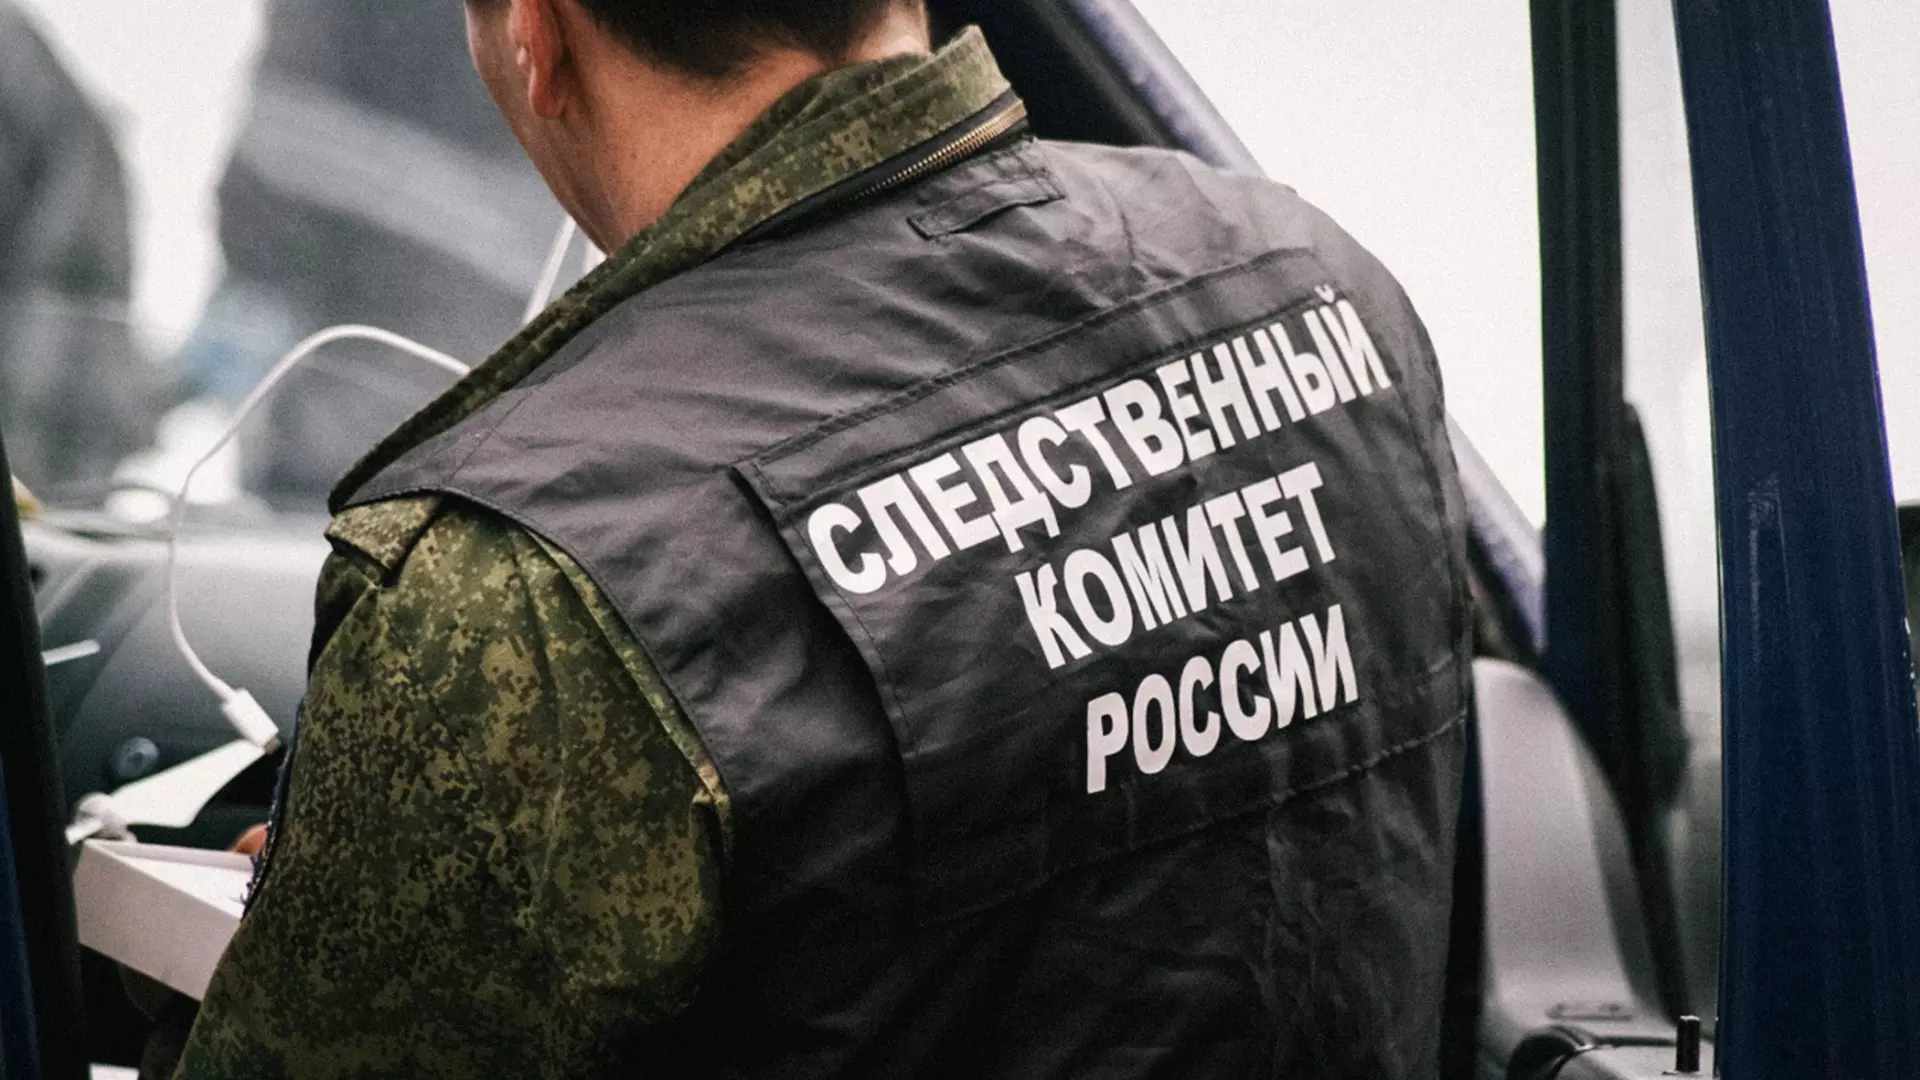 ДТП случаются, а вопросы с мигрантами решаются в Челябинской области